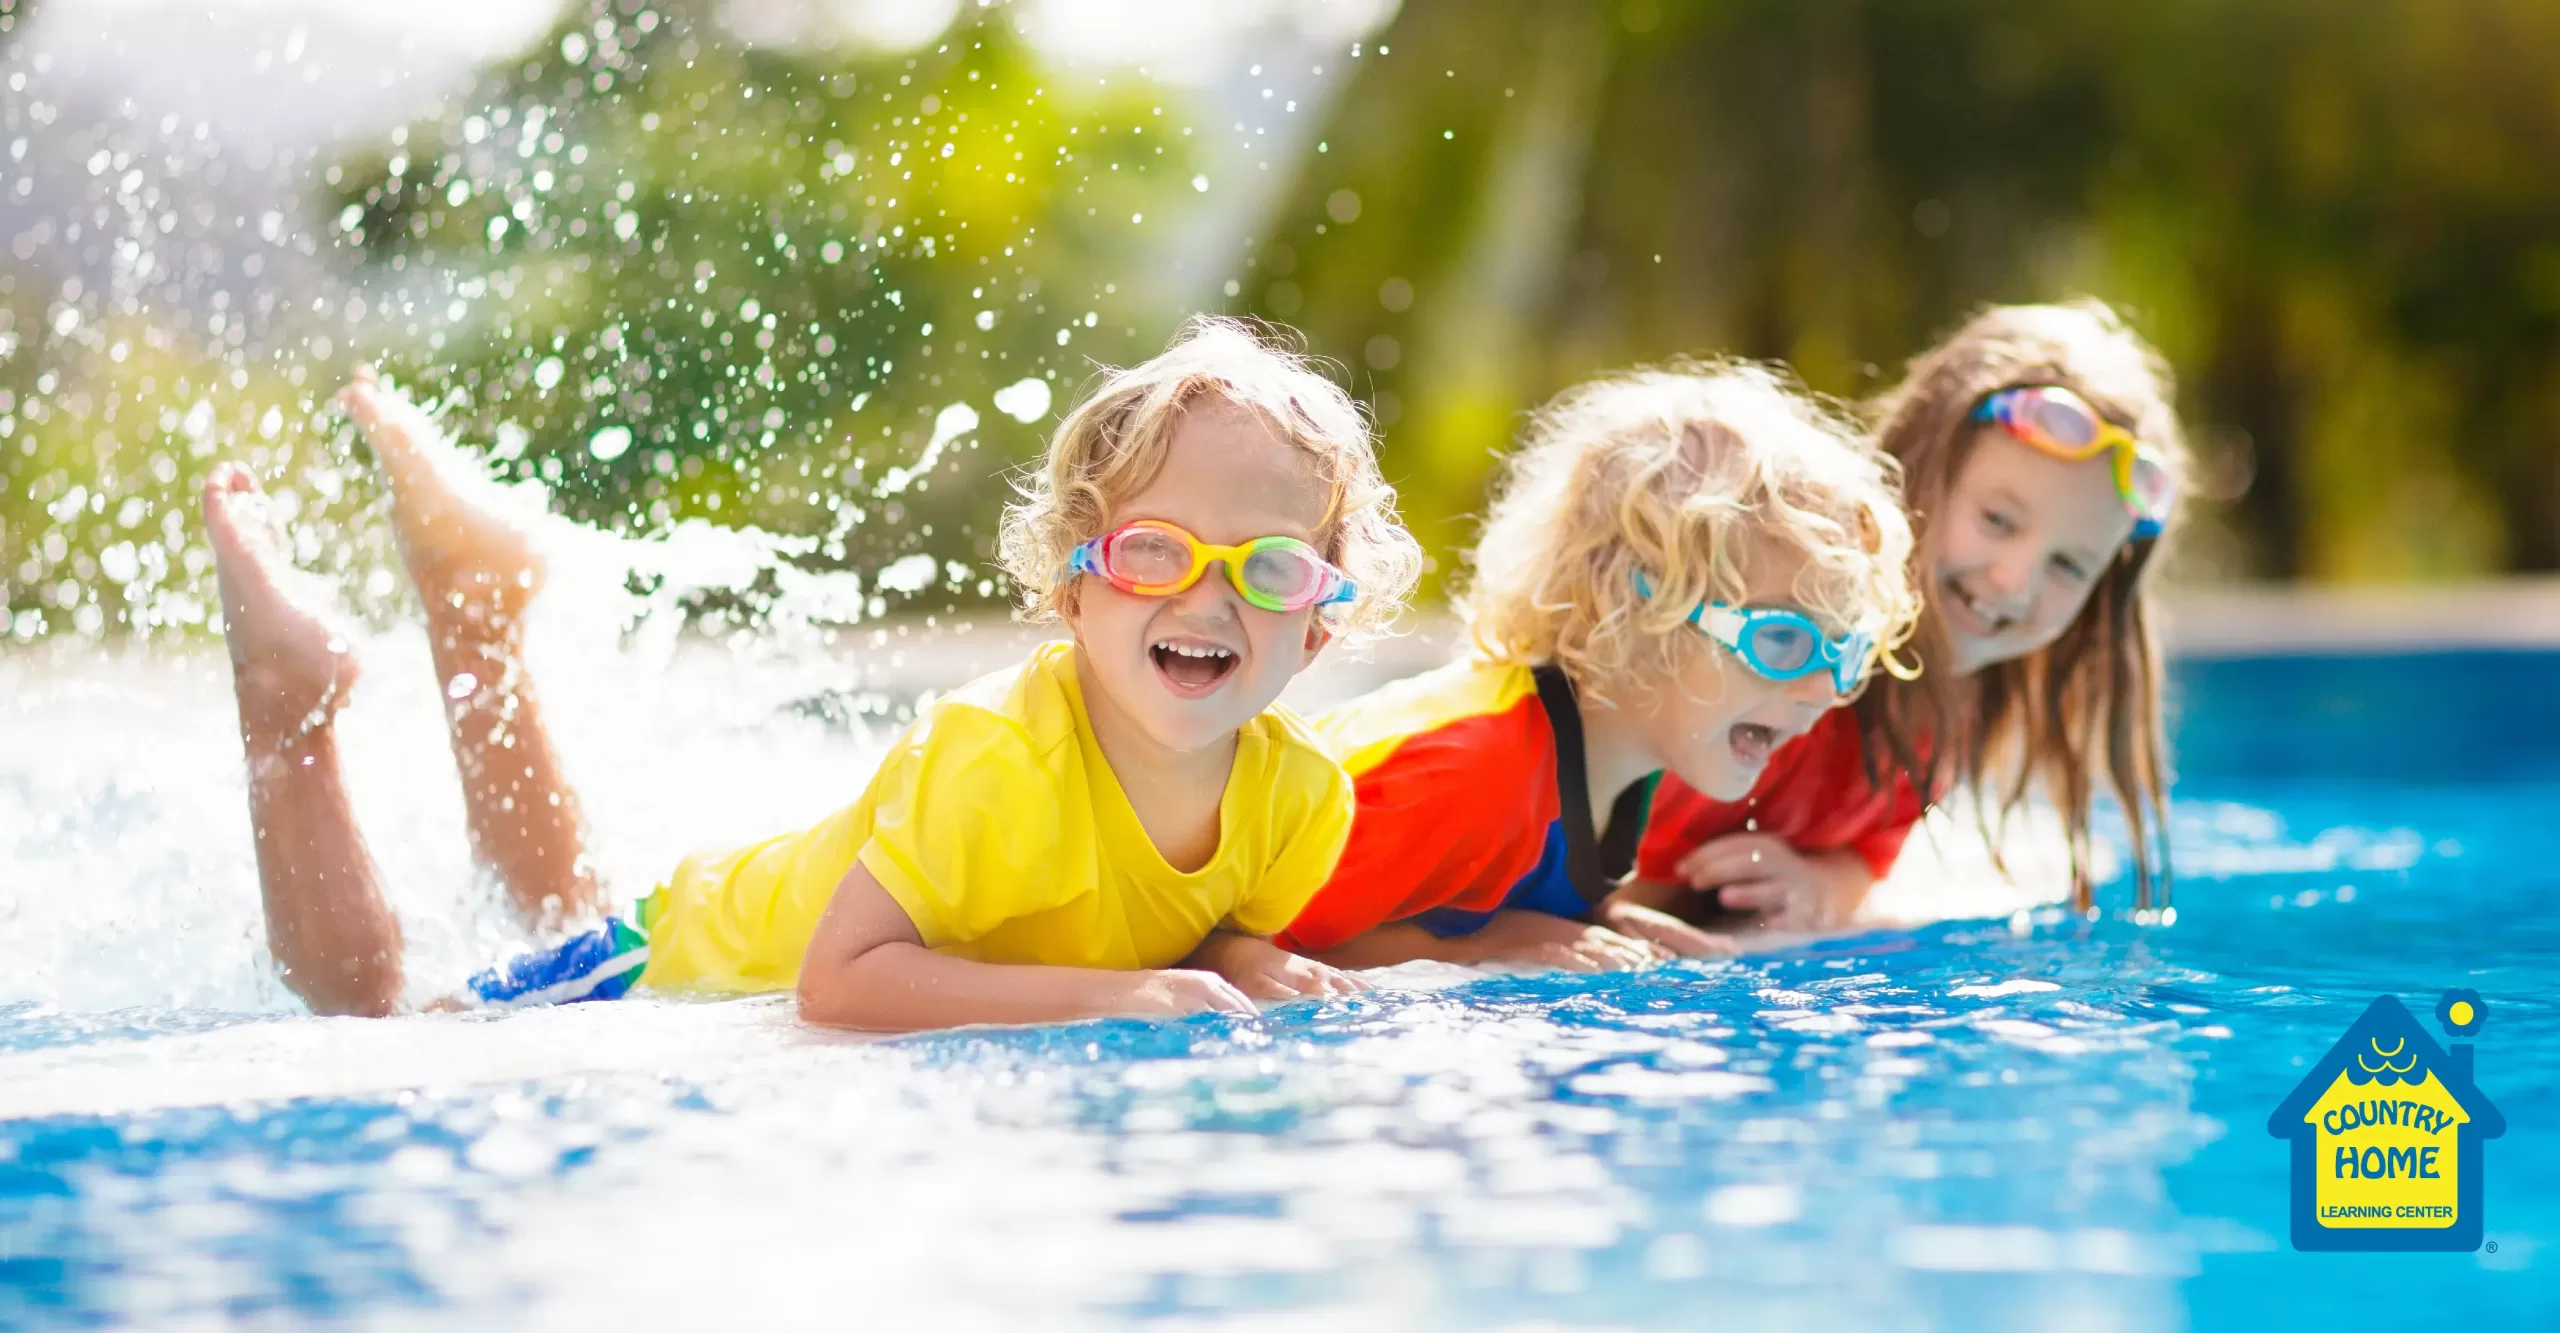 kids enjoying slashing in a pool during the summer